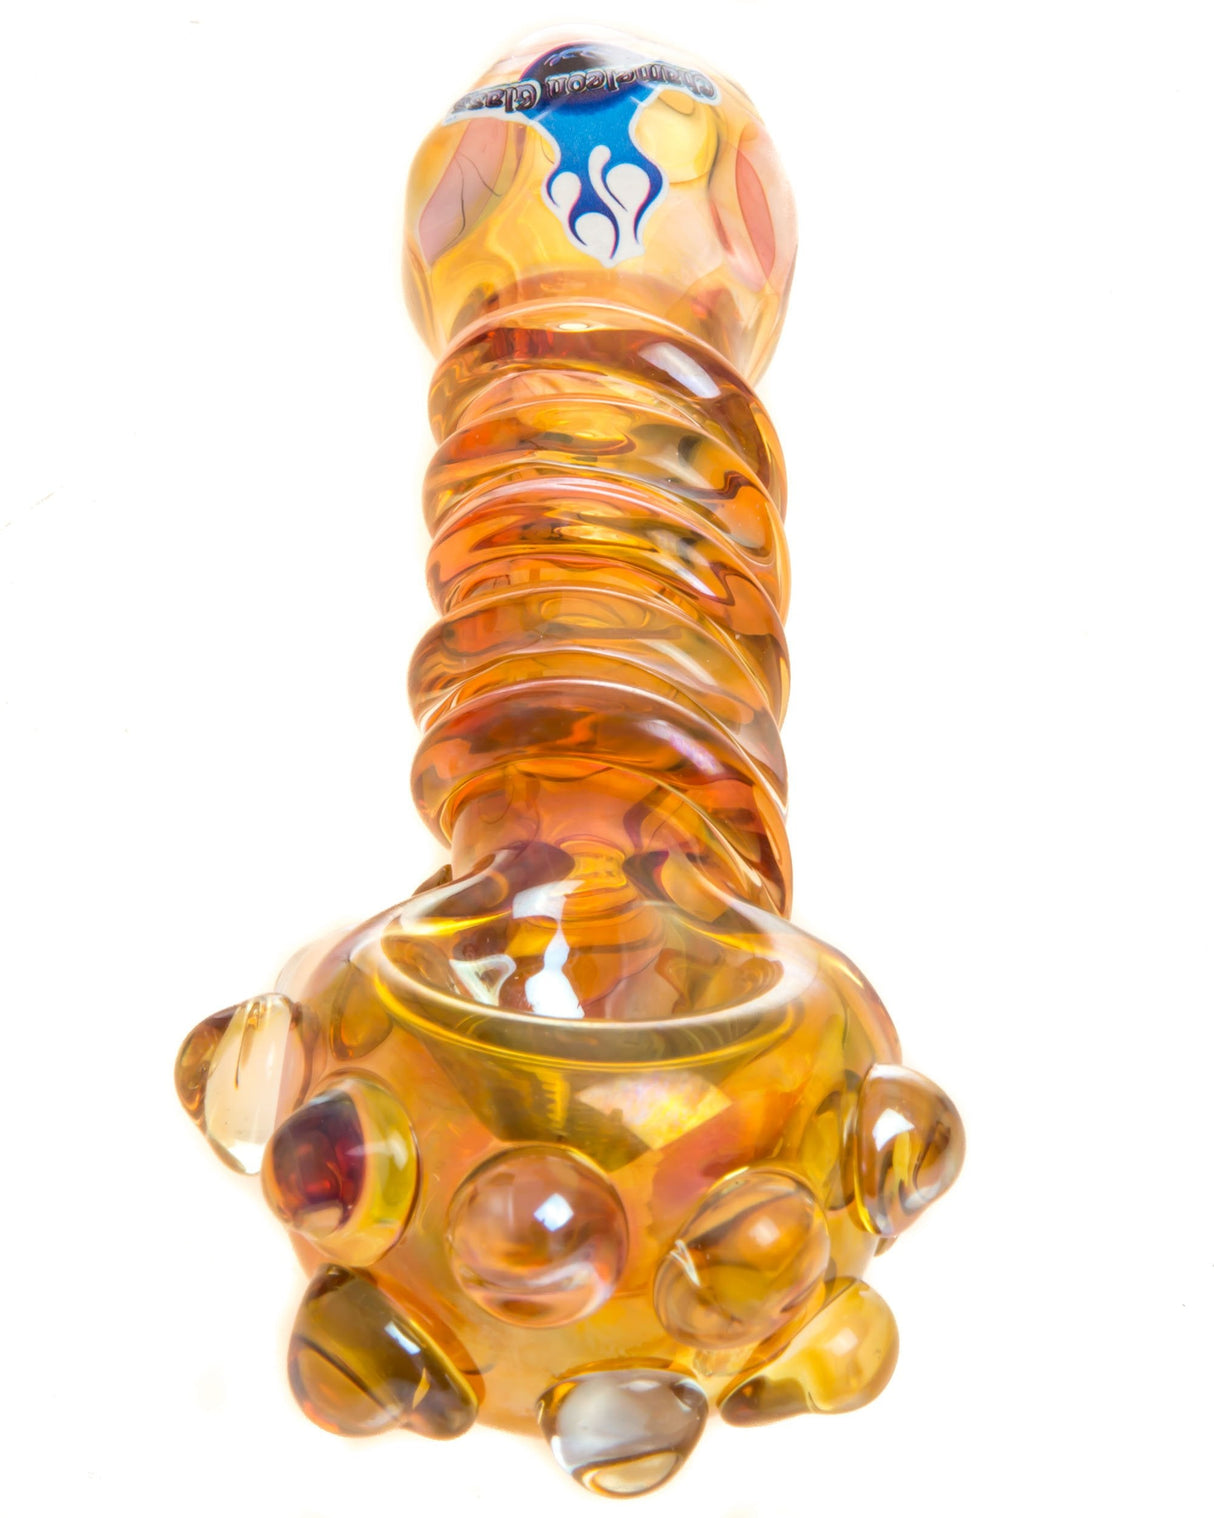 Chameleon Glass Tangerine Dream Pipe in Borosilicate Glass with Orange Swirl Design